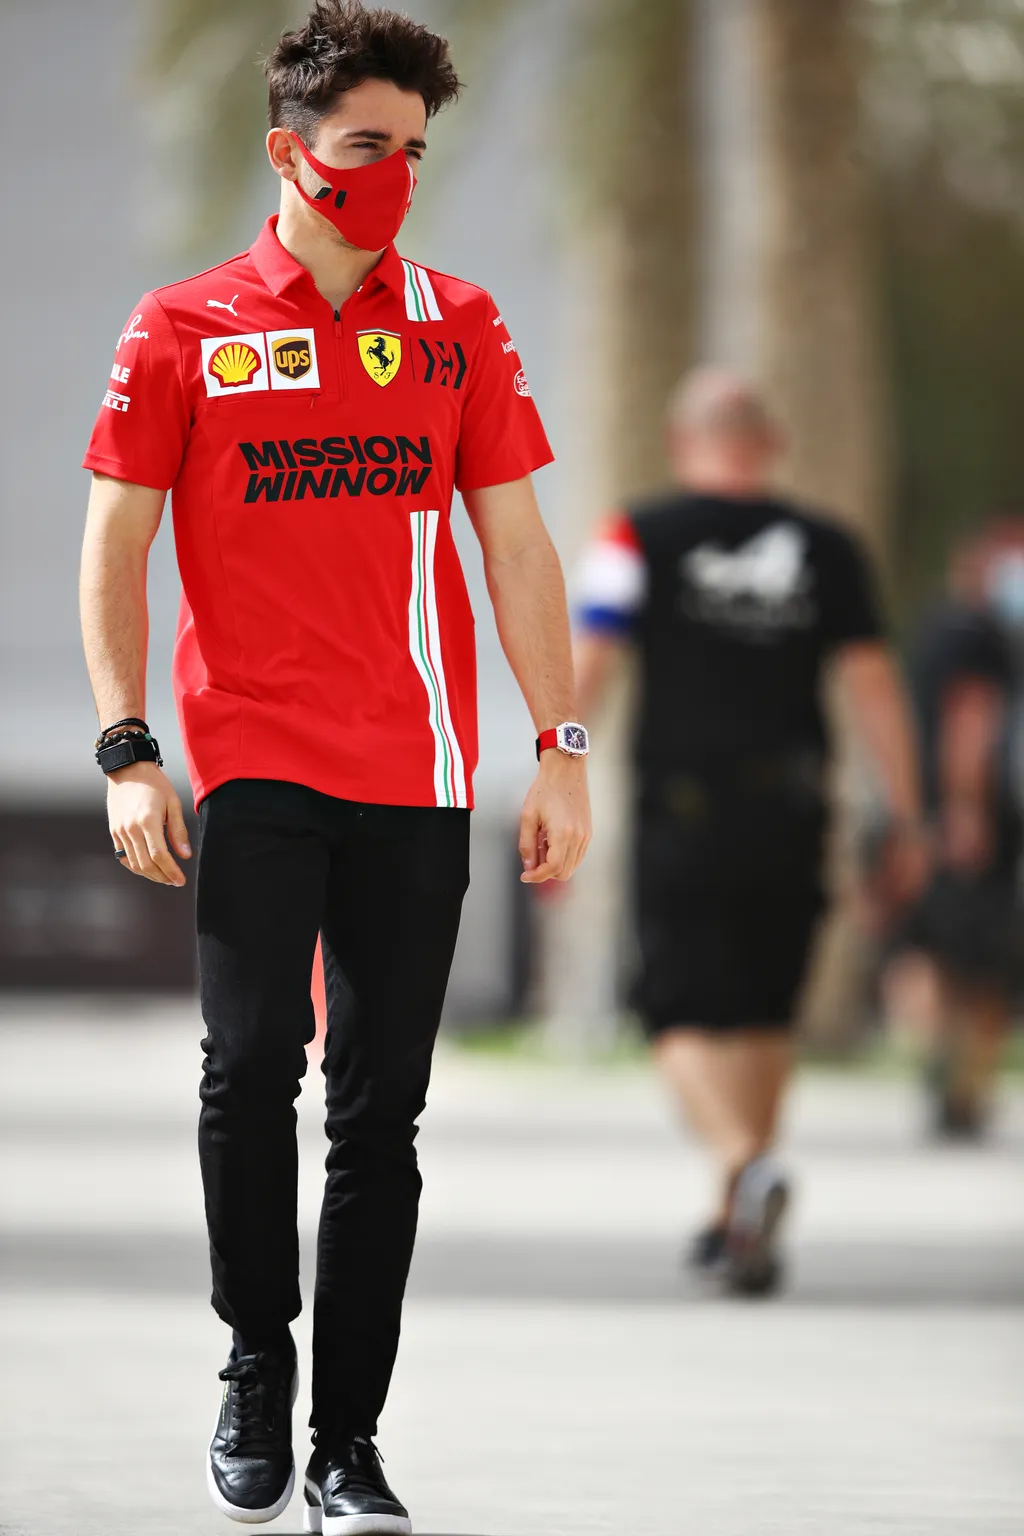 Forma-1, Charles Leclerc, Ferrari, Bahrein teszt 2. nap, 2021 